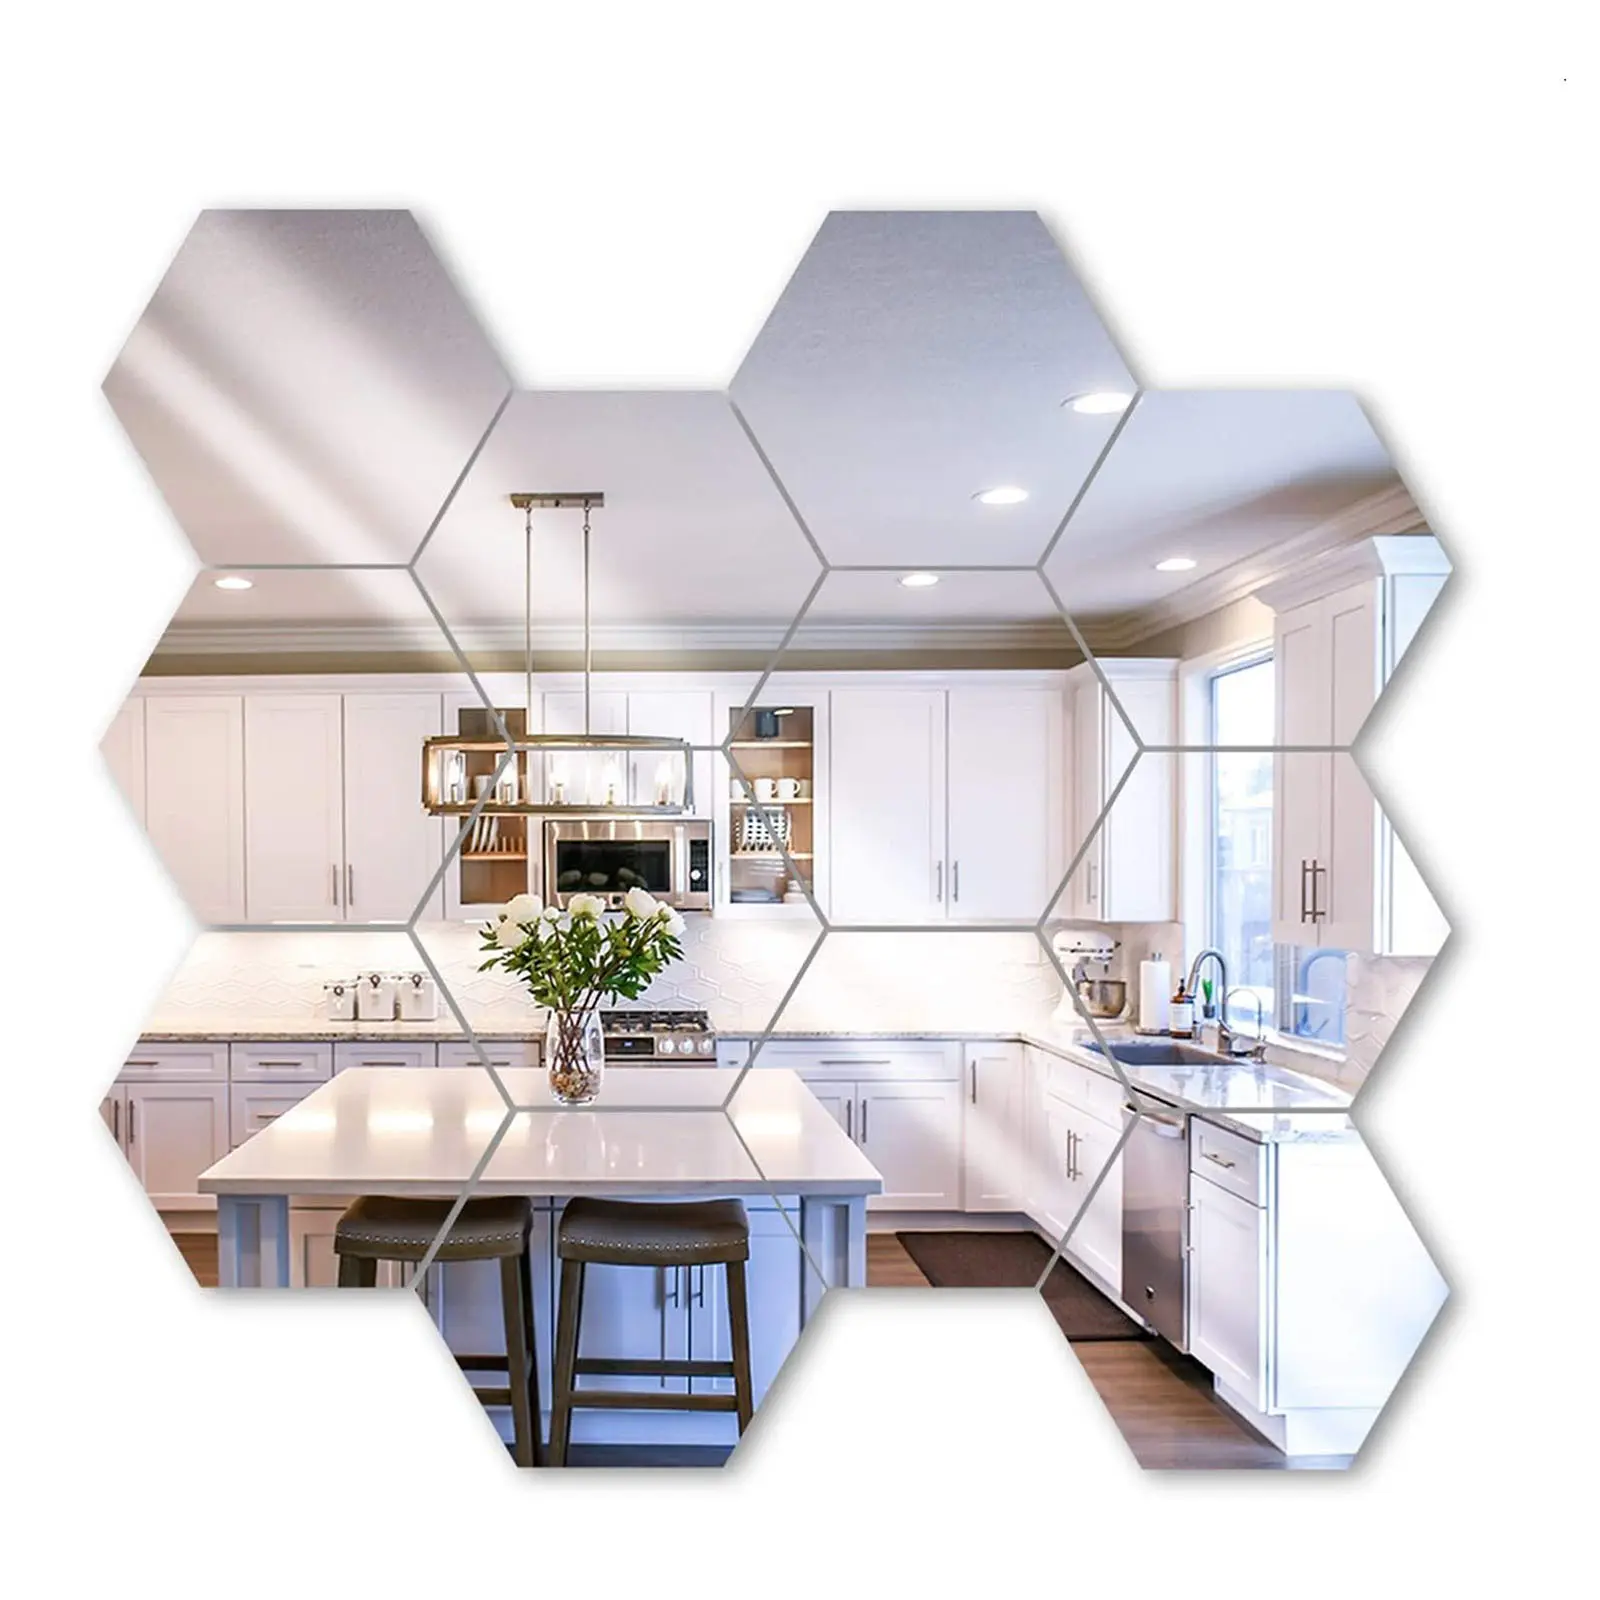 Adesivo de Parede Espelhado Multicolorido, Adesivo Criativo para Decoração de Casa, 12 pçs/set, DIY, 3D, Hexagonal